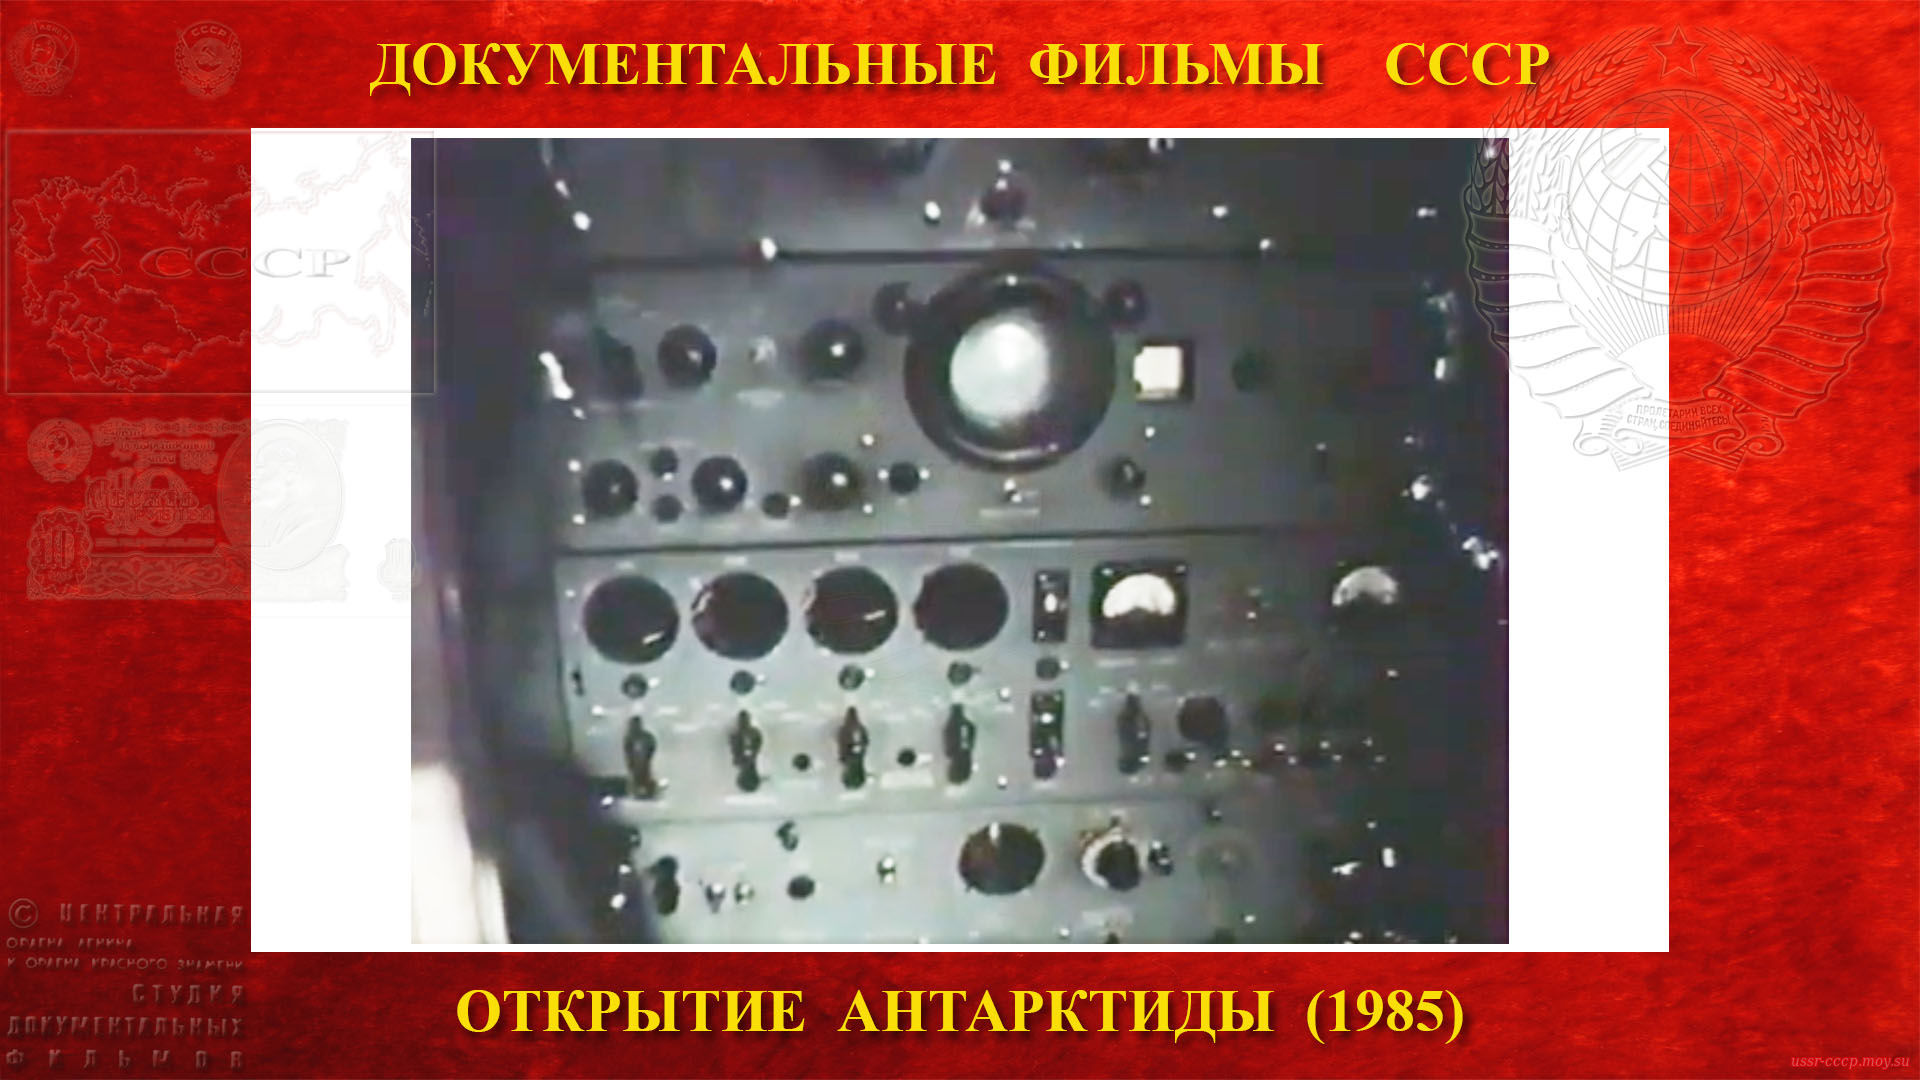 Открытие Антарктиды — 14 февраля 1956 года — ушла вторая радиограмма, наш раппорт приветствия в адрес XX-го съезда Коммунистической партии Советского Союза начинавшего в тот день свою работу в Москве.